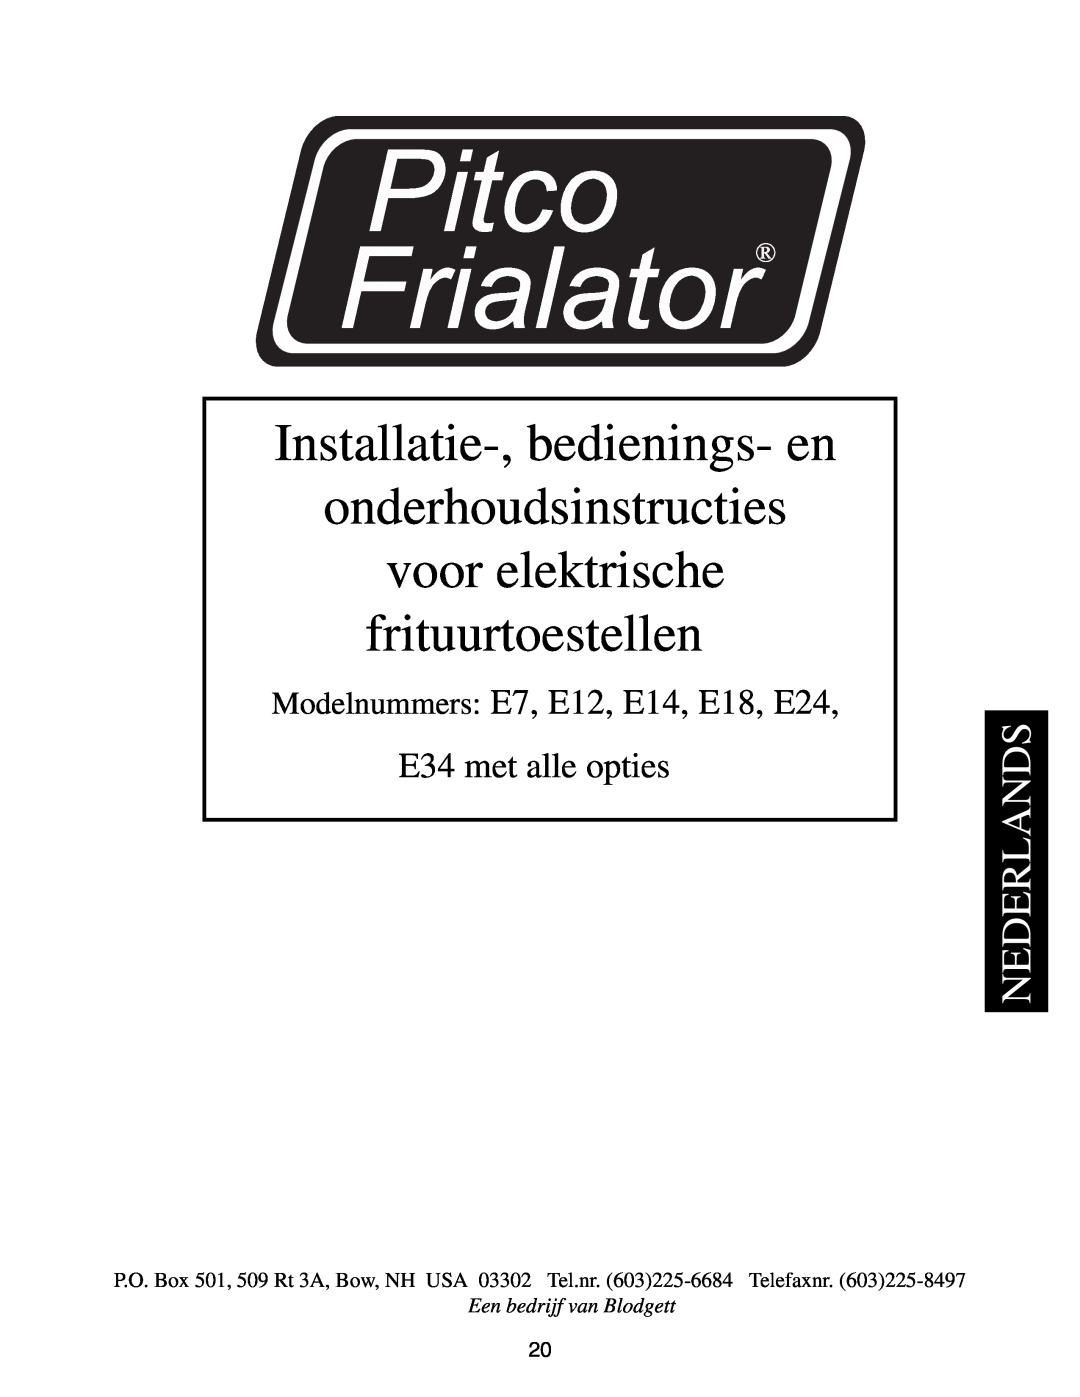 Pitco Frialator E12, E7 Installatie-,bedienings- en onderhoudsinstructies, voor elektrische frituurtoestellen, Nederlands 